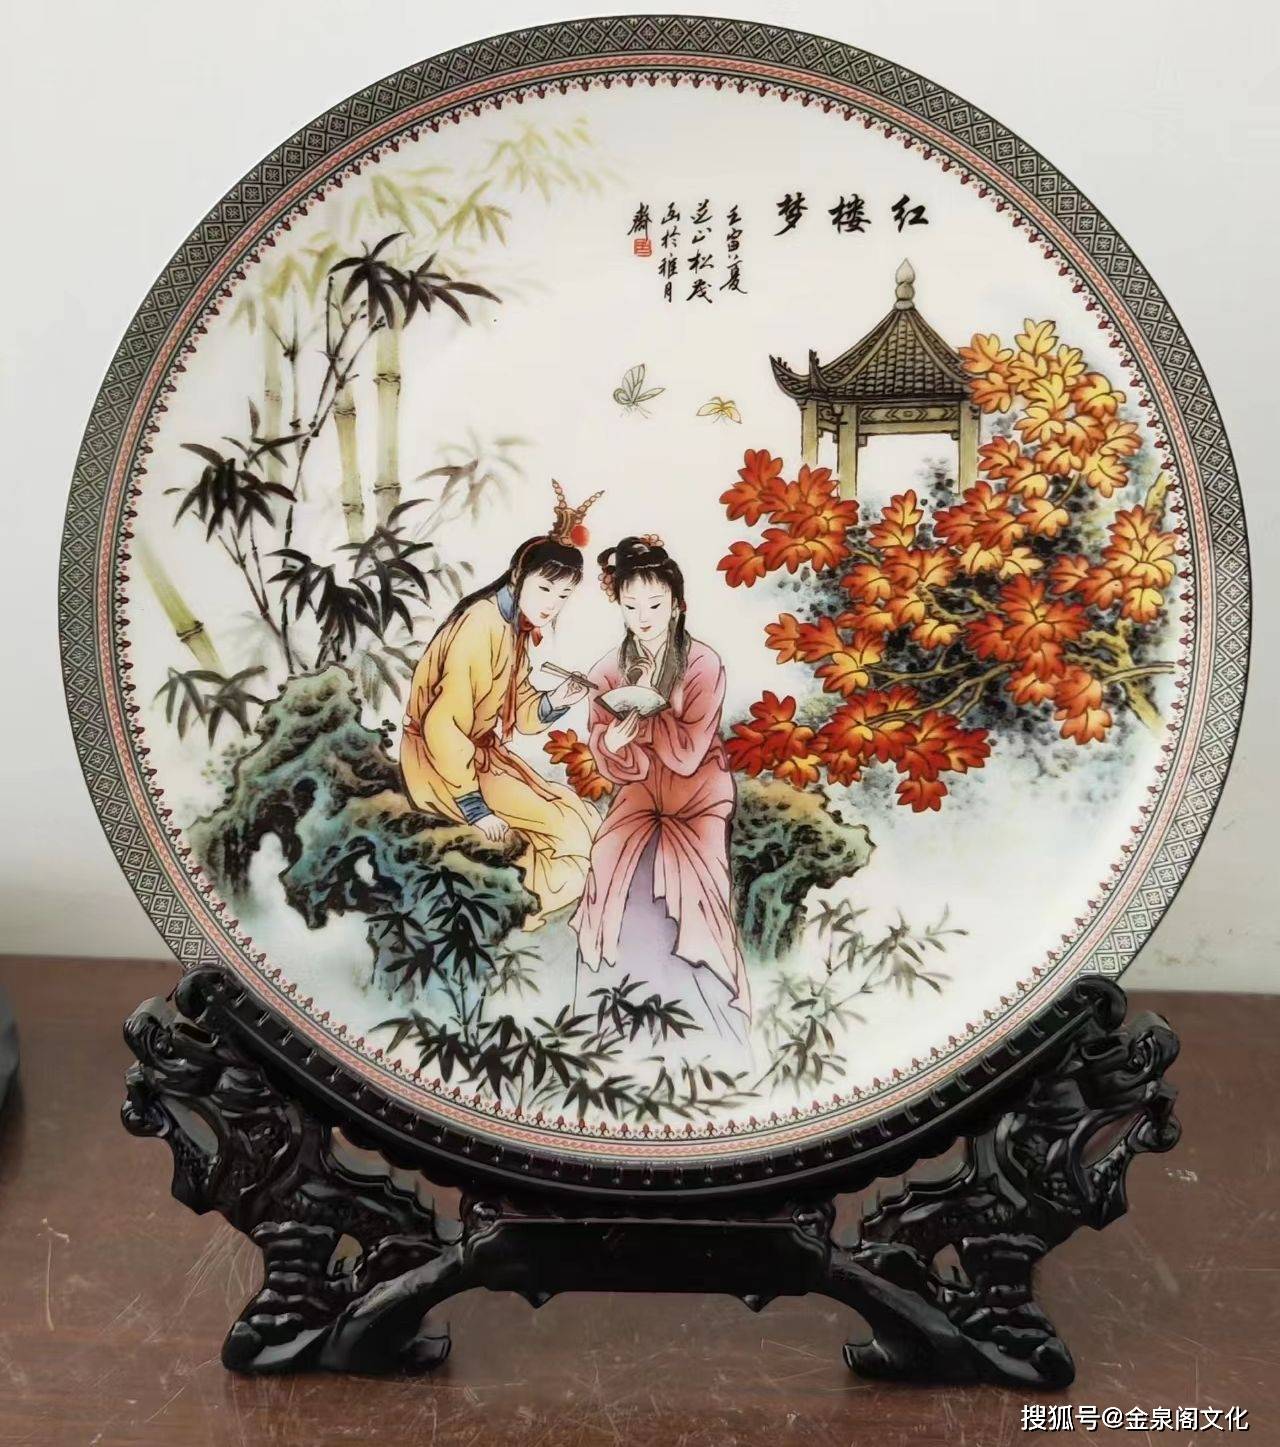 中国工艺美术大师张松茂 《四大名著》粉彩赏盘陶瓷世家耋耄老人的